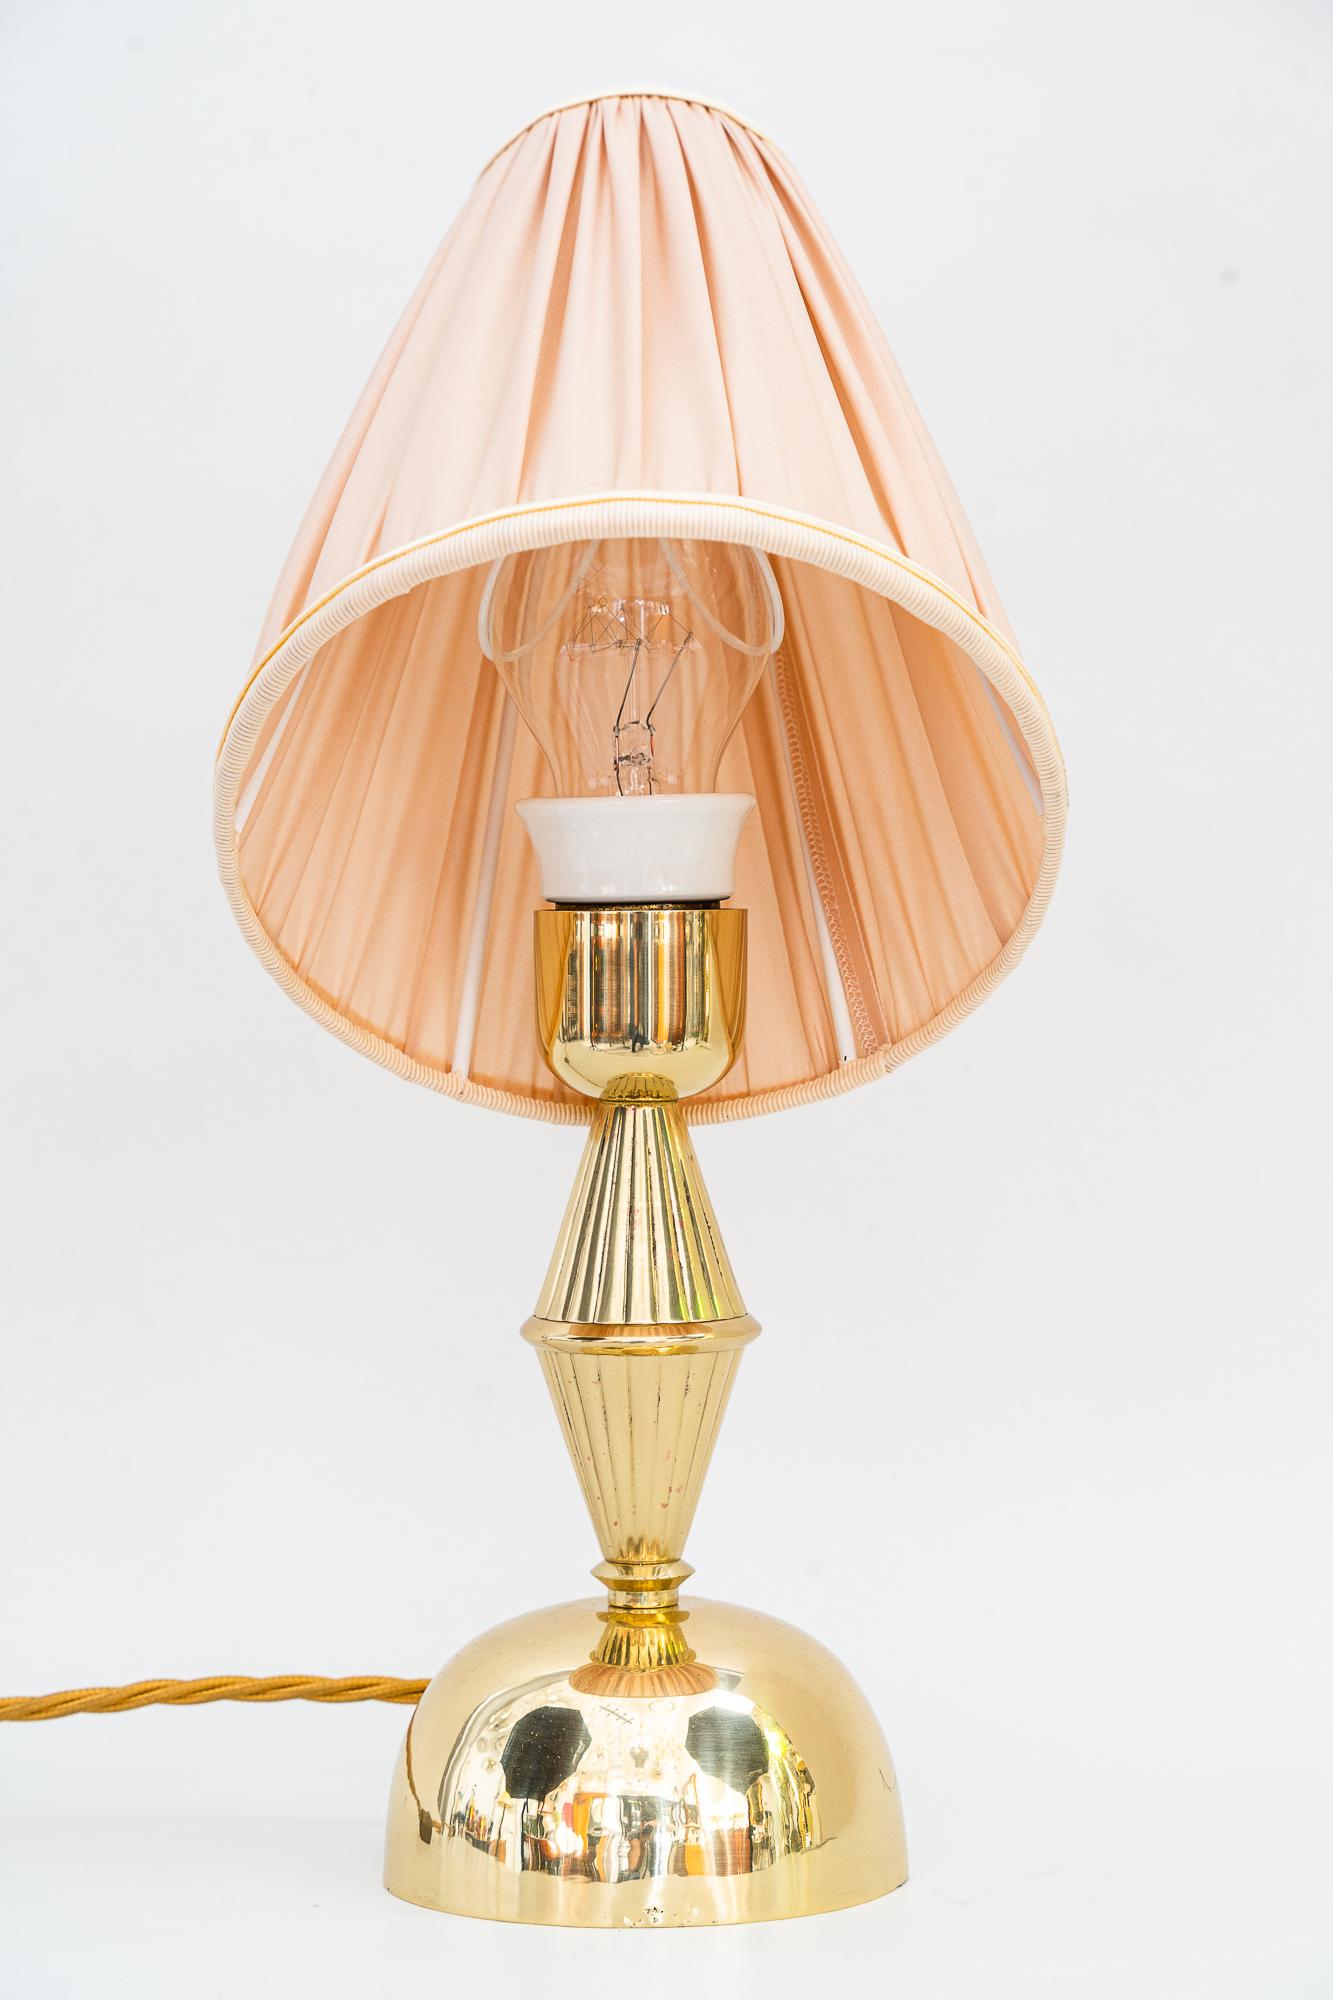 Art-Déco-Tischlampe Vienna aus den 1920er Jahren
Poliert und emailliert
Der Farbton wird ersetzt (neu).